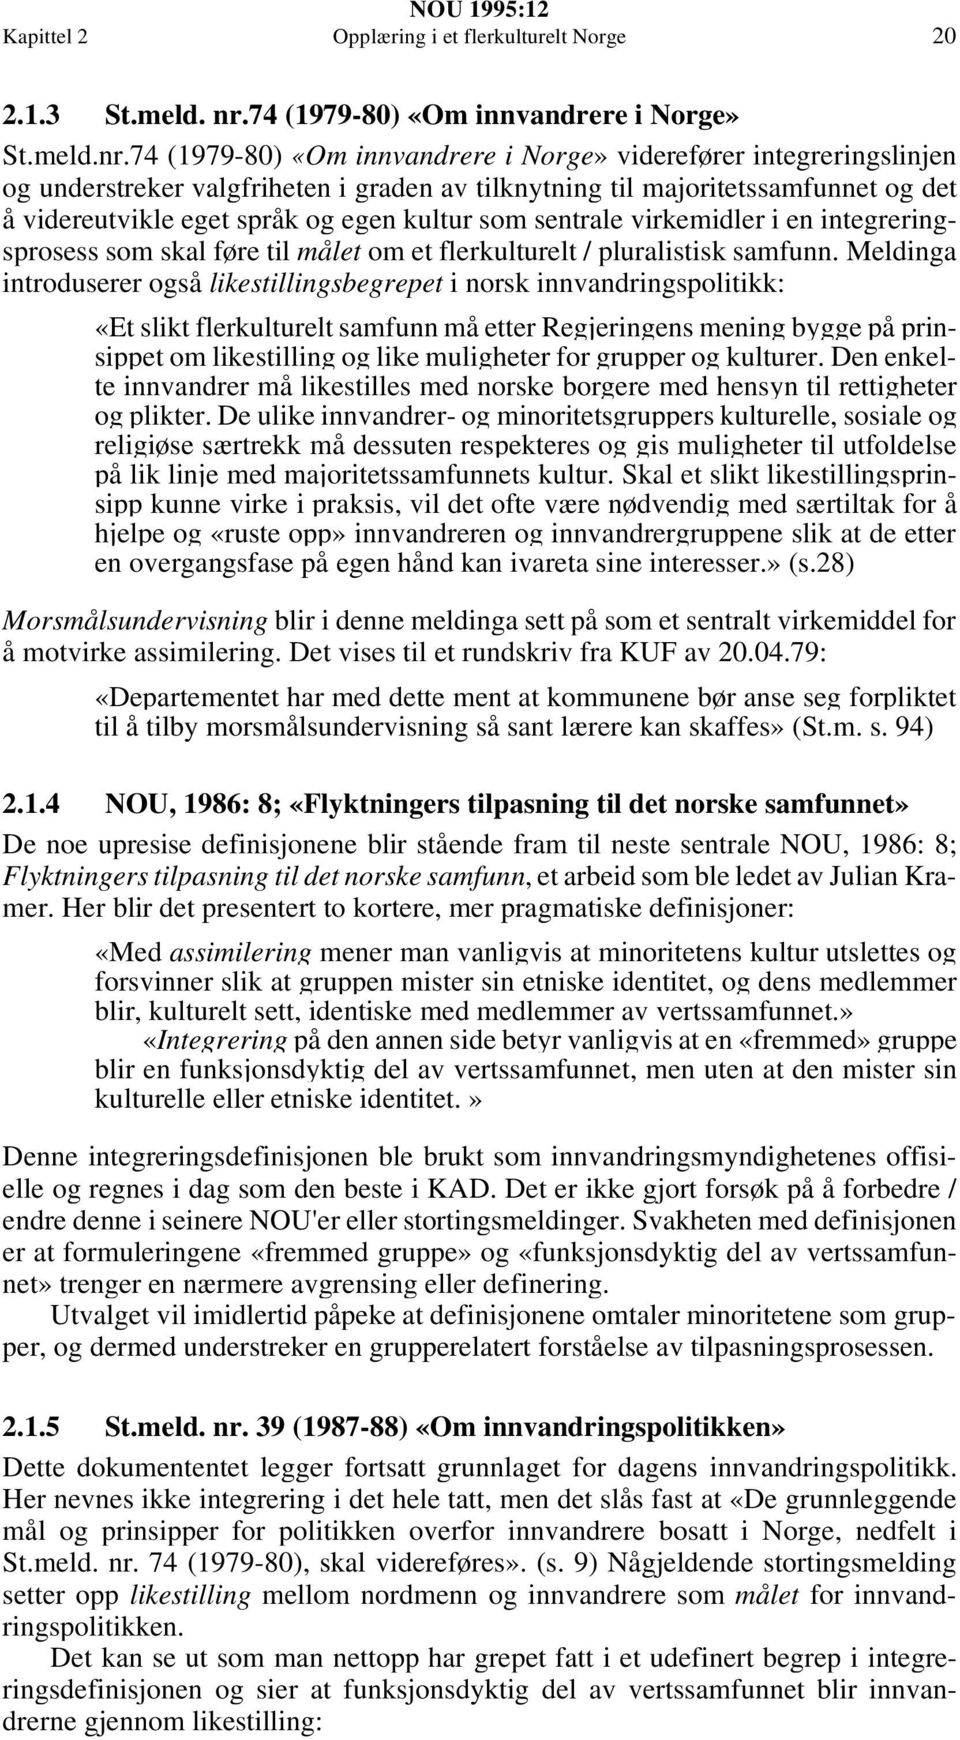 74 (1979-80) «Om innvandrere i Norge» viderefører integreringslinjen og understreker valgfriheten i graden av tilknytning til majoritetssamfunnet og det å videreutvikle eget språk og egen kultur som